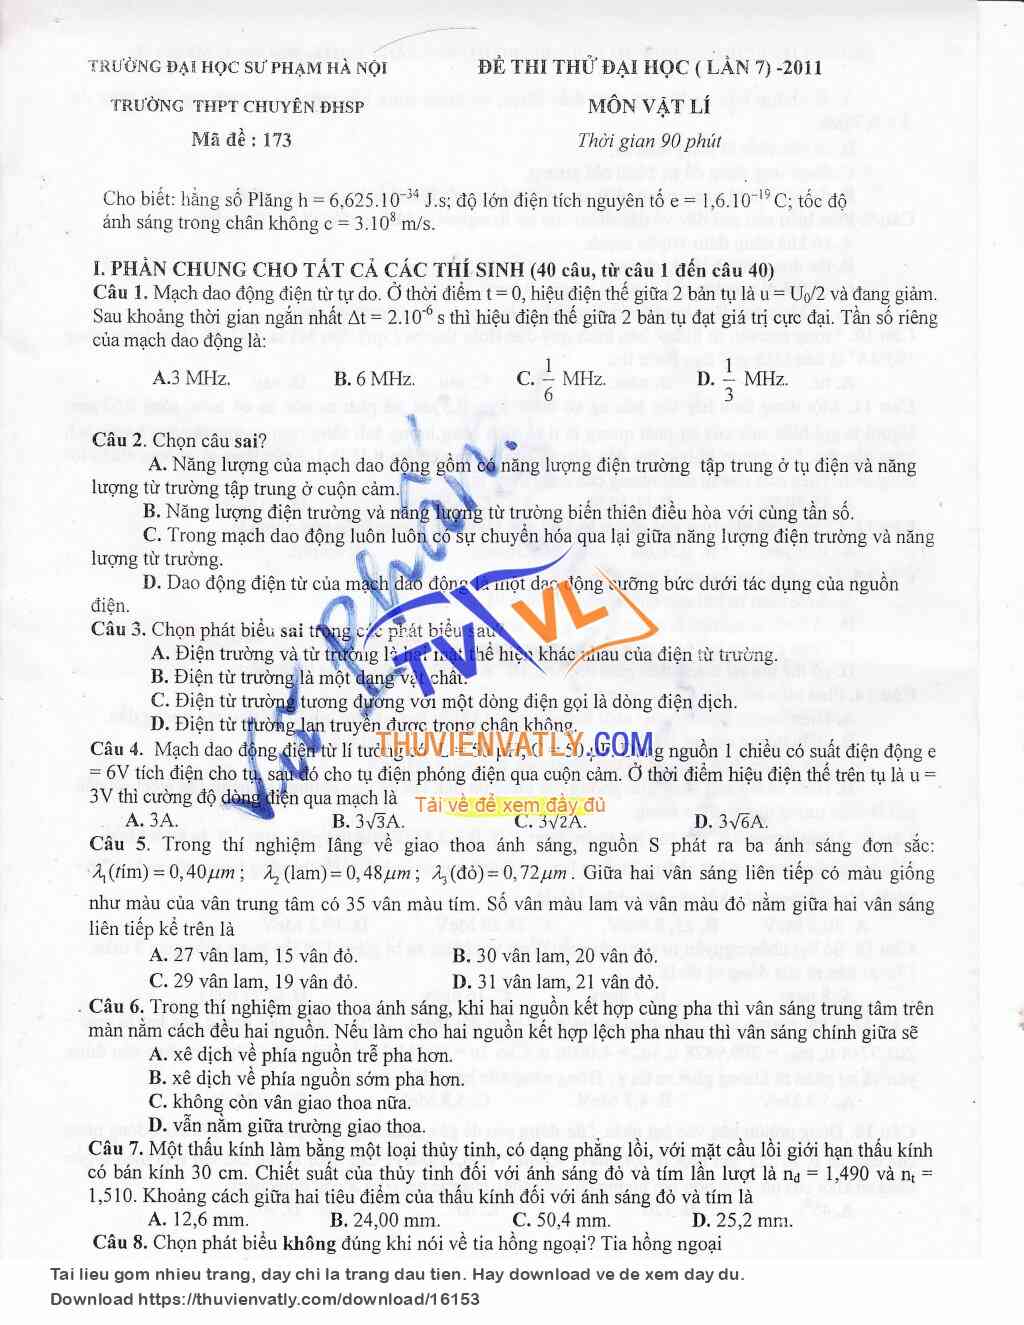 Đề thi thử ĐHSP Hà Nội lần 7- 2011